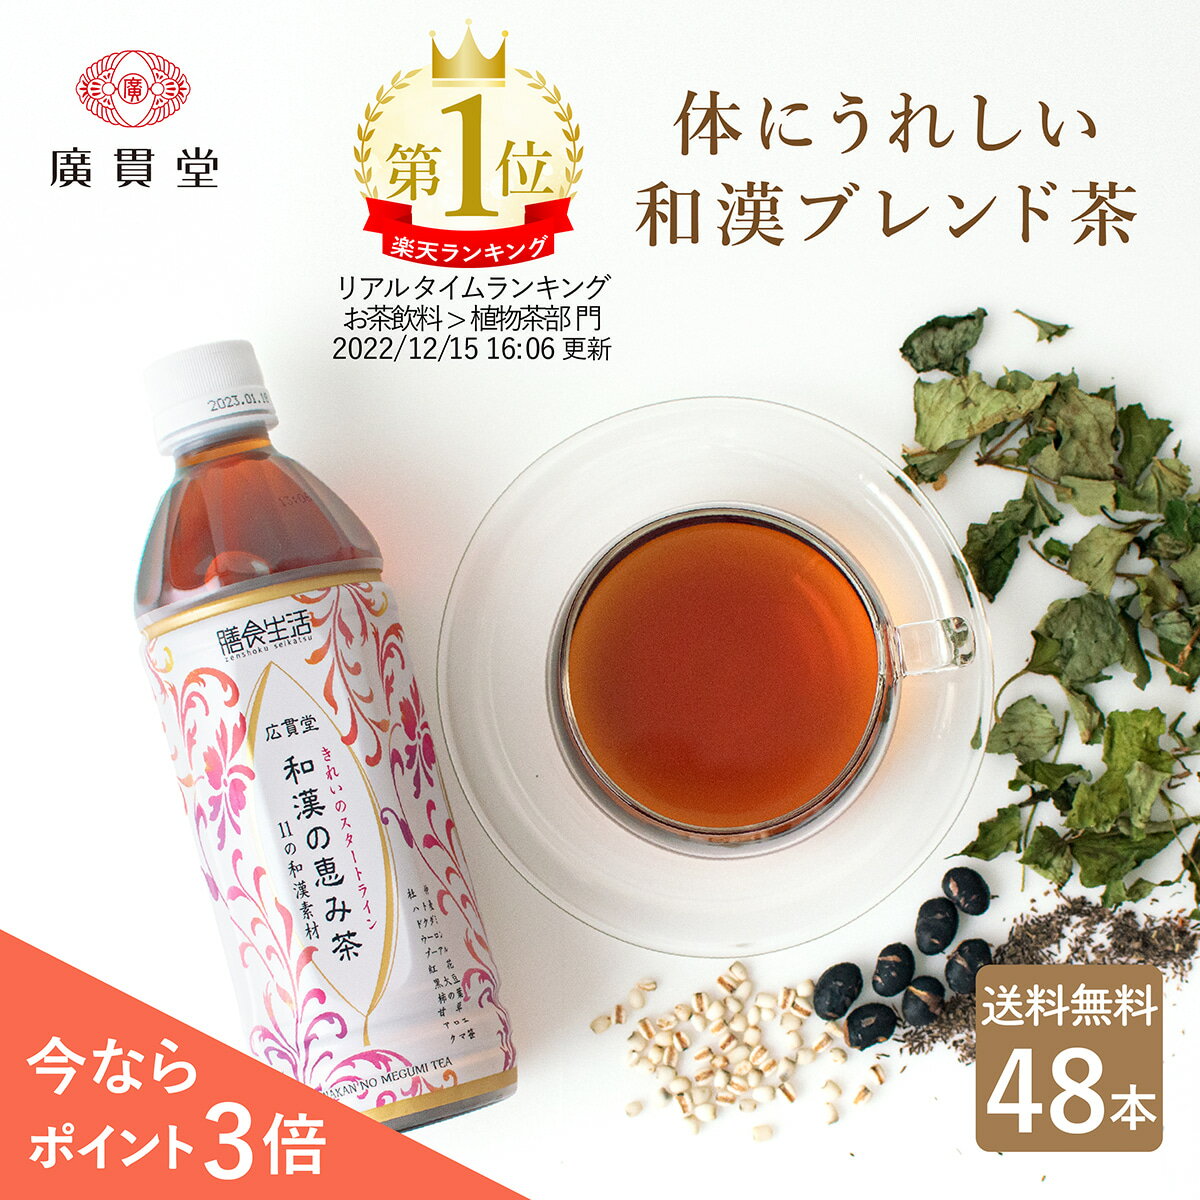 富山 の 製薬会社 ・ 広貫堂 監修 の 健康茶 です。 体の中から働きかける11種類の 和漢素材 が、 美容 と 健康 にアプローチします。 烏龍茶 ベースで 後味 スッキリ ！ 渋み や 苦み 等の クセがない から飲みやすく、リピートされるお客様が多い商品です。 ＜体にうれしい和漢ブレンド茶＞ 体の中から働きかける伝統の和漢素材11種」 ◆黒大豆…黒豆とも呼ばれ、ポリフェノールの一種であるアントシアニンやミネラル、疲労回復に役立つビタミンB1がたっぷり ◆どくだみ…ポリフェノールの一種であるフラボノイド類や5大栄養素のひとつであるミネラル類を多く含み、有用な効果が期待される秘草 ◆杜仲茶…現代人に不足しがちなミネラルやビタミンCをはじめ、ゲニポシド酸やアスペルロシドなど話題の健康成分がたっぷり ◆ハトムギ…和漢では美容の定番素材。タンパク質やビタミンB1、ビタミンB2、カルシウム、鉄分、アミノ酸なども豊富 ◆プーアル…中国茶（黒茶）の一種で、美容と健康に良いポリフェノールが豊富 ◆烏龍茶…カテキンやウーロン茶ポリフェノールをたっぷり含む半発酵茶 ◆アロエ…健康と美容の万能草。各種ビタミンや食物繊維が豊富 ◆熊笹…古来中国から生薬として重宝されており、栄養価が高く、ミネラルやビタミン類がたっぷり ◆甘草…天然の甘味料として食品に用いられる他、古来中国、ヨーロッパで利用されてきた植物 ◆柿の葉…栄養価が高く美容や健康に良いとされており、熱に強いビタミンCやポリフェノールが豊富 ◆ベニバナ…ビタミンE、不飽和脂肪酸（リノール酸・オレイン酸）、食物繊維、フラボンなどの栄養成分がたっぷり ＜カラダよろこぶ和漢素材のススメ＞ 東洋から日本に伝わった植物や動物などの健康素材を、日本人の体質や風土、味覚に合わせて発展させたものを「和漢素材」といいます。普段の食生活に和漢素材を取り入れ、体の内側からコンディションを整えましょう。 ＜こだわりぬいたブレンドだから飲みやすい！＞ ●烏龍茶ベースで後味スッキリ！ ●渋味や苦味がないのでゴクゴク飲める！ ●クセがないから飲みやすい！ ●冬場はホットもオススメ！ ●烏龍茶ベースのスッキリした味で、どんな食事にもピッタリ！ ●北アルプスの雪解け水である「黒部の名水」仕込み ＜リピーター率の高い商品です＞ 和漢の恵み茶は、男女ともにリピーターが多く、40代、50代、60代と幅広い年代に人気の商品です。 ＜品質管理が徹底された工場で製造＞ ●製造元であるニットービバレッジは、ペットボトル飲料を年間1億本も製造している実績豊富な飲料メーカーです。 ●食品安全に関する国際資格を取得しており、徹底した検査体制で、品質を管理しています。 （FSSC22000認証取得、ISO9001認証取得、有機JAS認証取得） ＼災害対策にもおすすめ／ 普段から食材や加工品を少し多めにストックし、使ったら使った分だけ新しく買い足し、常に一定量の食料を備蓄しておく方法をローリングストックといいます。災害対策としてもぜひご活用ください。 ＼実用的なギフトとして／ 広貫堂オリジナルの和漢の恵み茶は、美容と健康が気になる方に人気の高い商品のため、実用的なギフトとしてもおすすめです。 （熨斗やギフトラッピングは受け付けておりませんのでご了承ください） 40代 50代 60代 に人気 お誕生日 誕生日プレゼント 誕生日祝い 快気祝い お返し お見舞い 父 お父さん 母 お母さん 義母 義父 恩人 部長 課長 上司 先生 先輩 祖父 おじいちゃん 祖母 おばあちゃん ちょっとしたプレゼントに 父の日 母の日 敬老の日 誕生日祝い 還暦祝い 古希祝い 喜寿祝い 傘寿祝い 米寿祝い お中元 お歳暮 防災備蓄 贈り物 贈答品 差し入れ 日常使い ストック 備蓄 ジム ランニング ウォーキング マラソン 登山 ハイキング 野球 サッカー 陸上 水泳 バスケットボール テニス バレーボールなどの運動 スポーツ時 農作業 畑仕事 工事現場 建築現場 土木作業 ●お茶の成分が沈殿・浮遊したり、濁ったり褐変することがありますが品質には問題ありません。 ●容器への衝撃をさけてください。破損・破壊する場合があります。 ●凍らせないでください。内容液が膨張し容器破損の原因になったり、成分が分離・沈殿したりすることがあります。 ●開栓後はすぐにお飲みください。 ●空容器の乱散防止にご協力ください。 ◆廣貫堂お客様相談窓口 TEL 076-424-2259